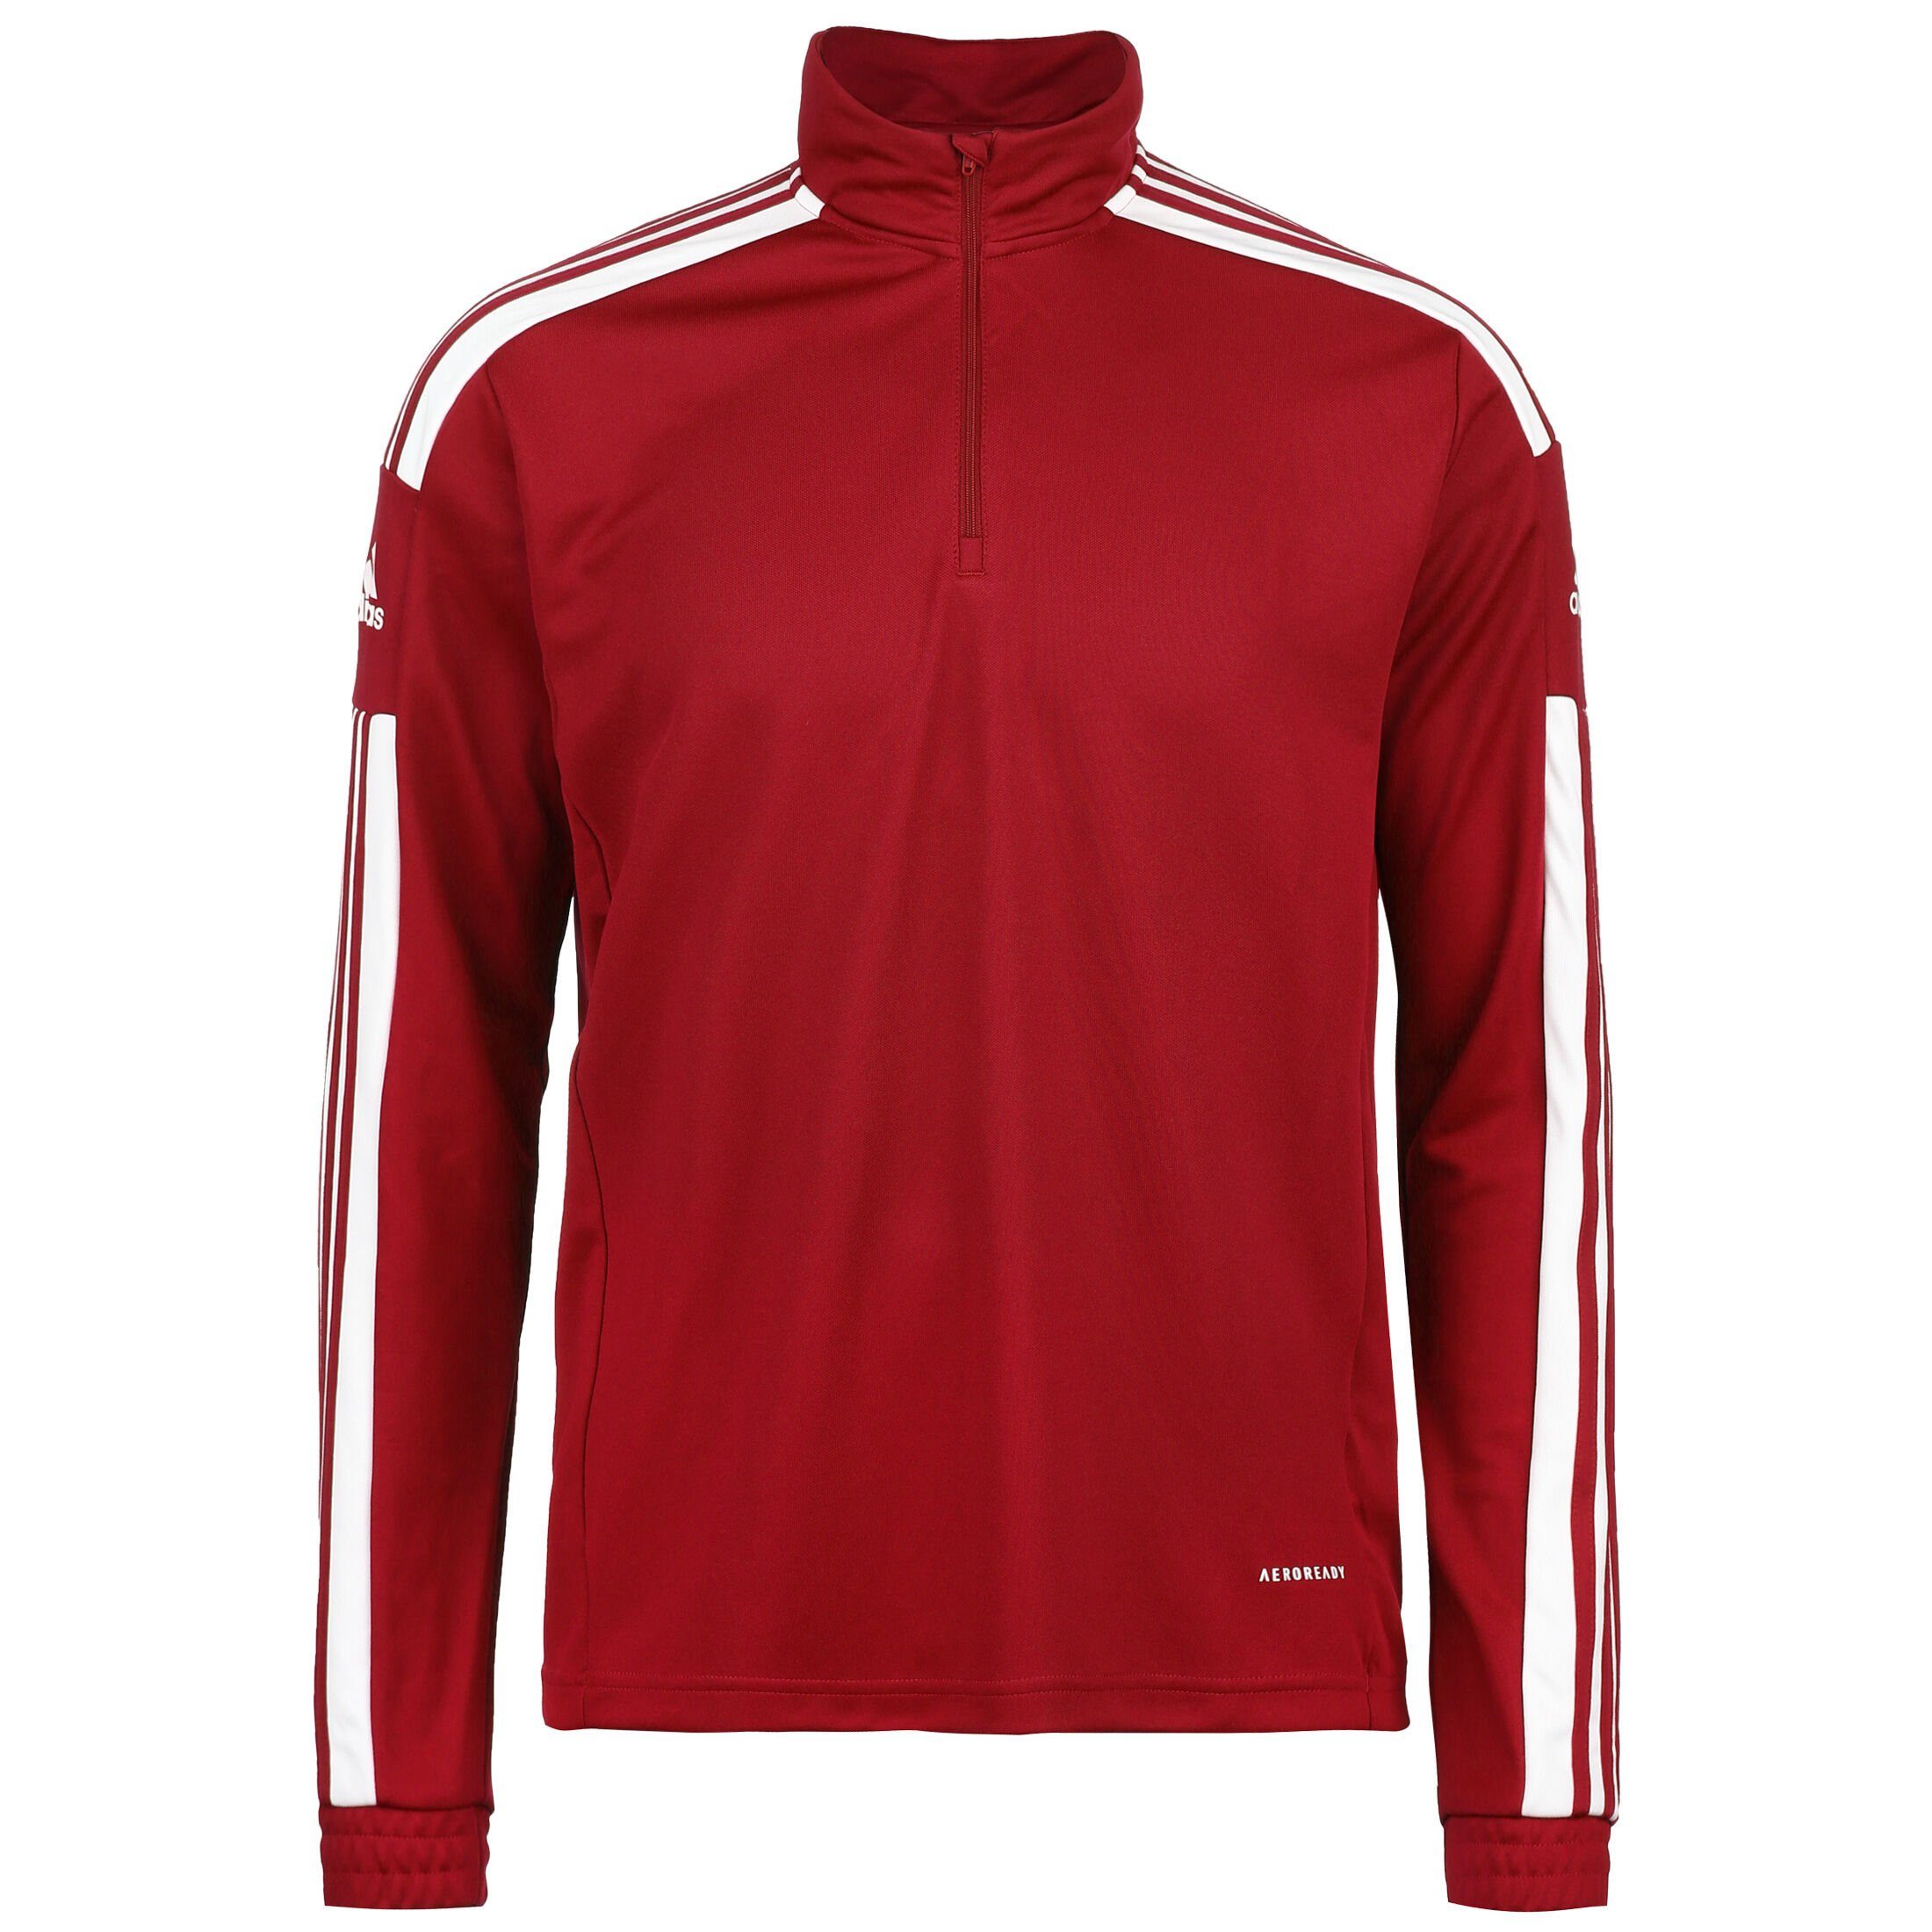 / adidas Sweatshirt Performance rot Herren Squadra weiß 21 Trainingssweat